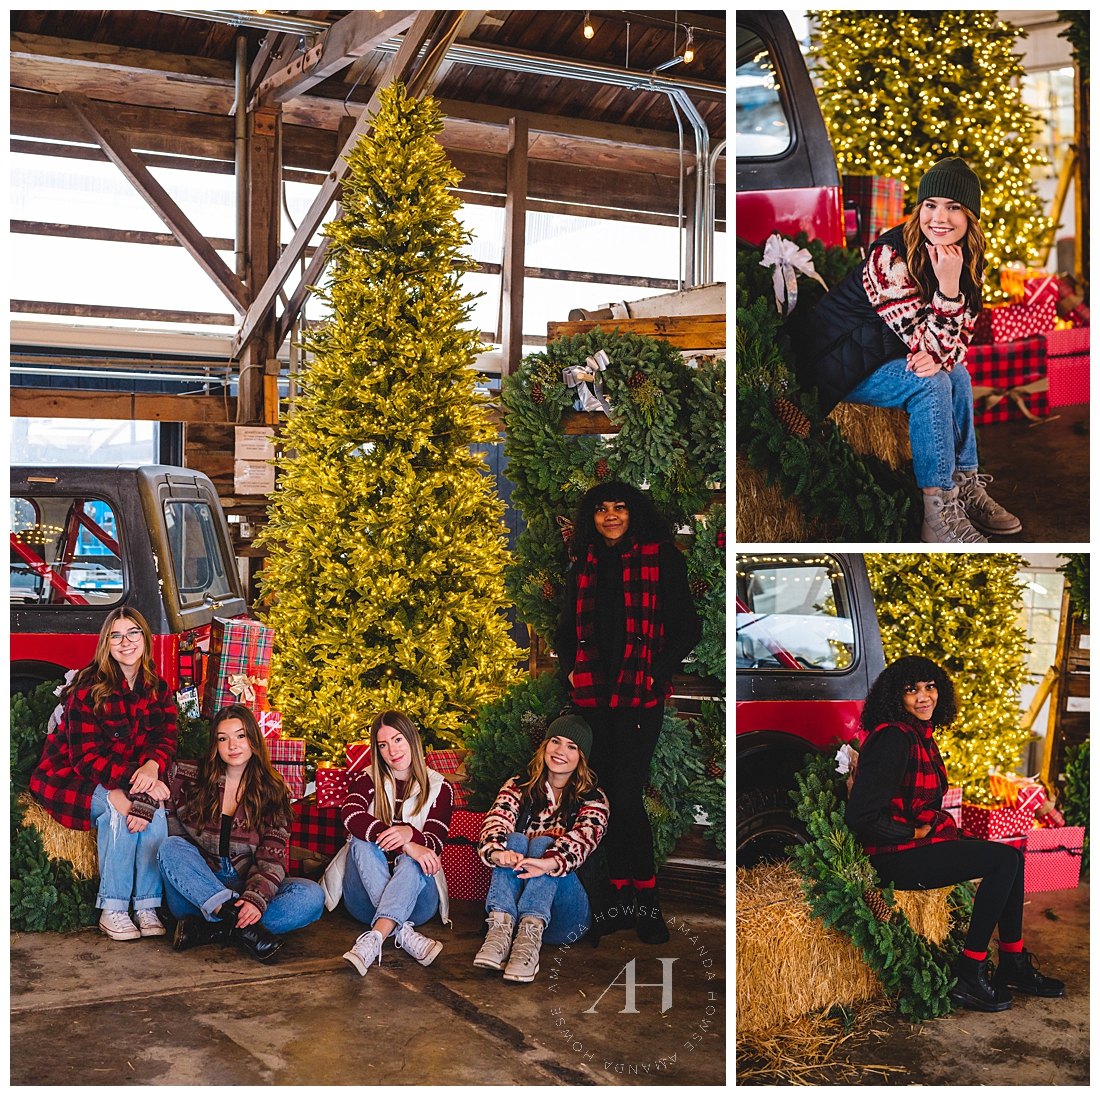 Senior Portraits Group Shot at Large Christmas Tree | Photographed by the Best Tacoma, Washington Senior Photographer Amanda Howse Photography